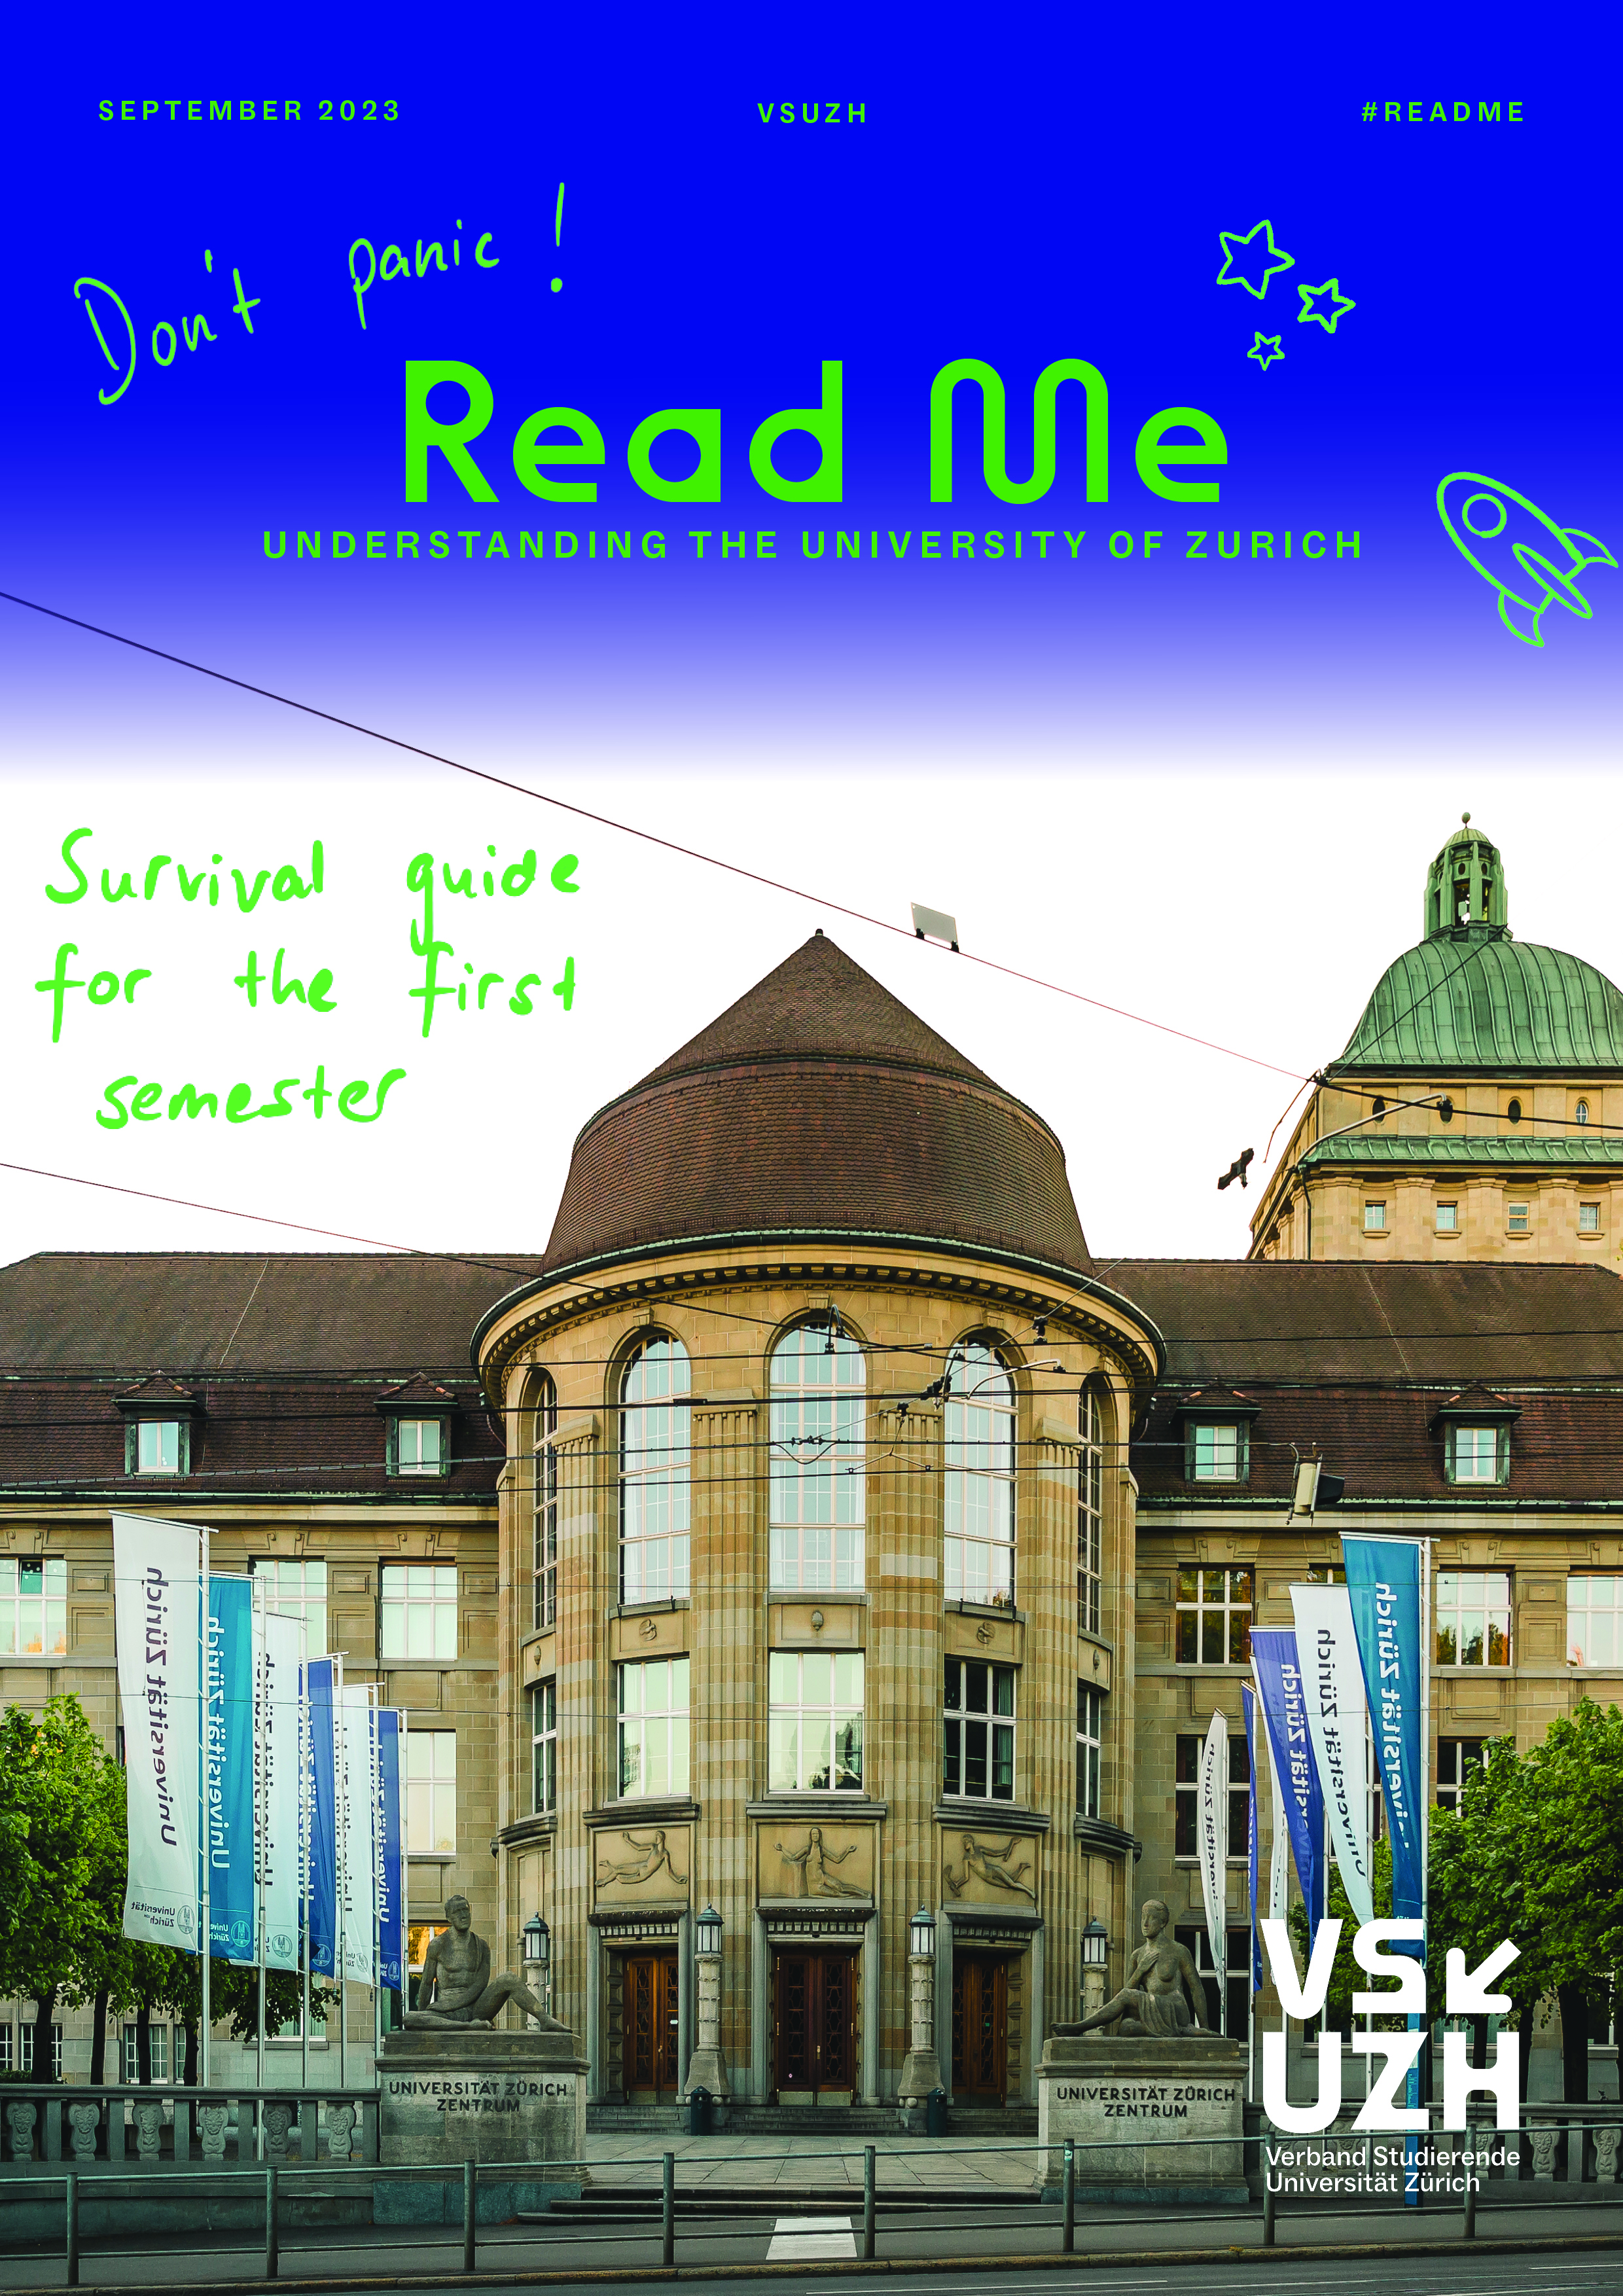 Deckblatt des Studienratgebers "Lies das" mit Foto des Hauptgebäudes